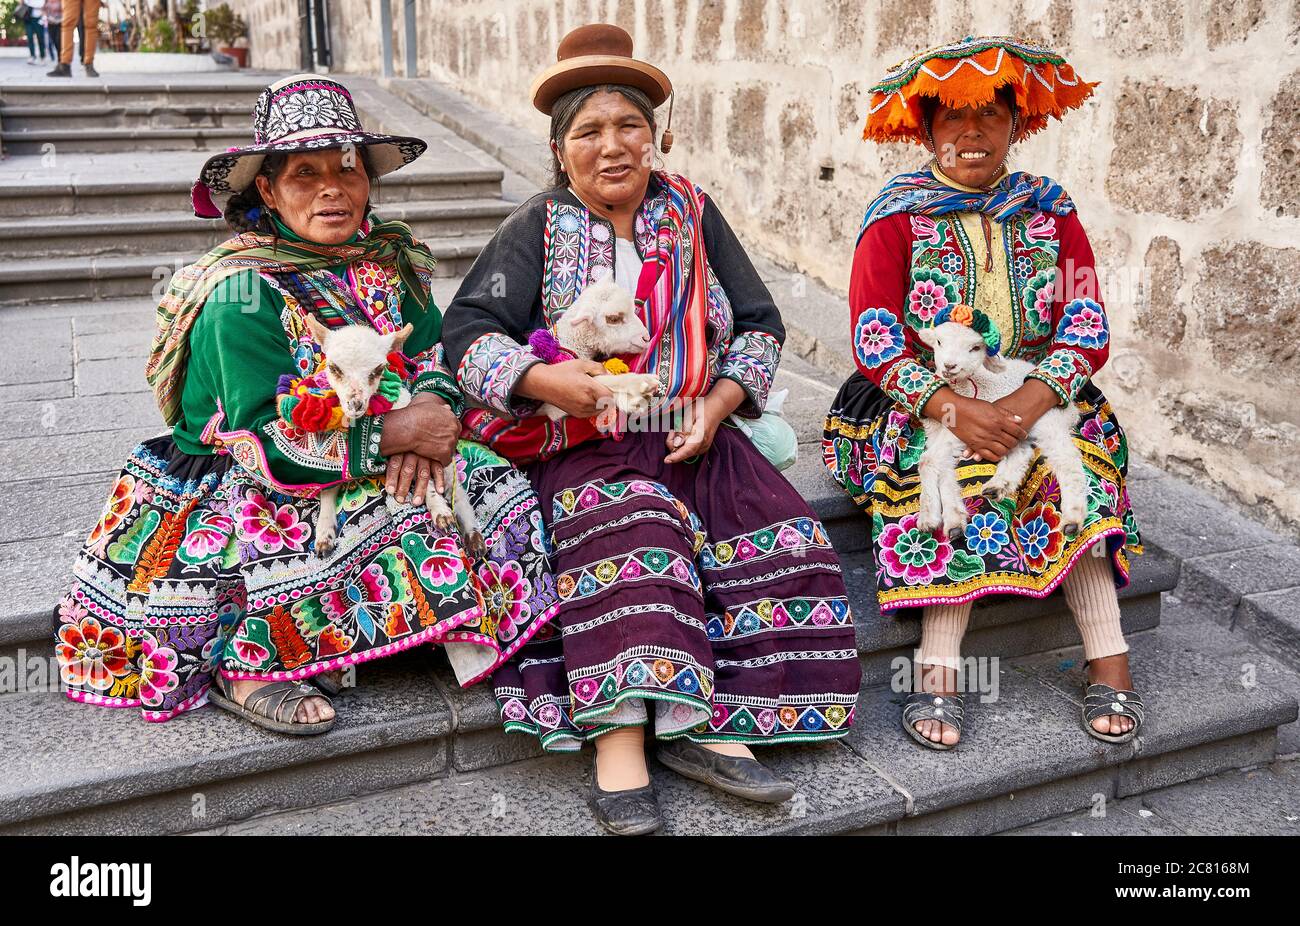 Inca dames posant pour des photos touristiques à Arequipa Banque D'Images